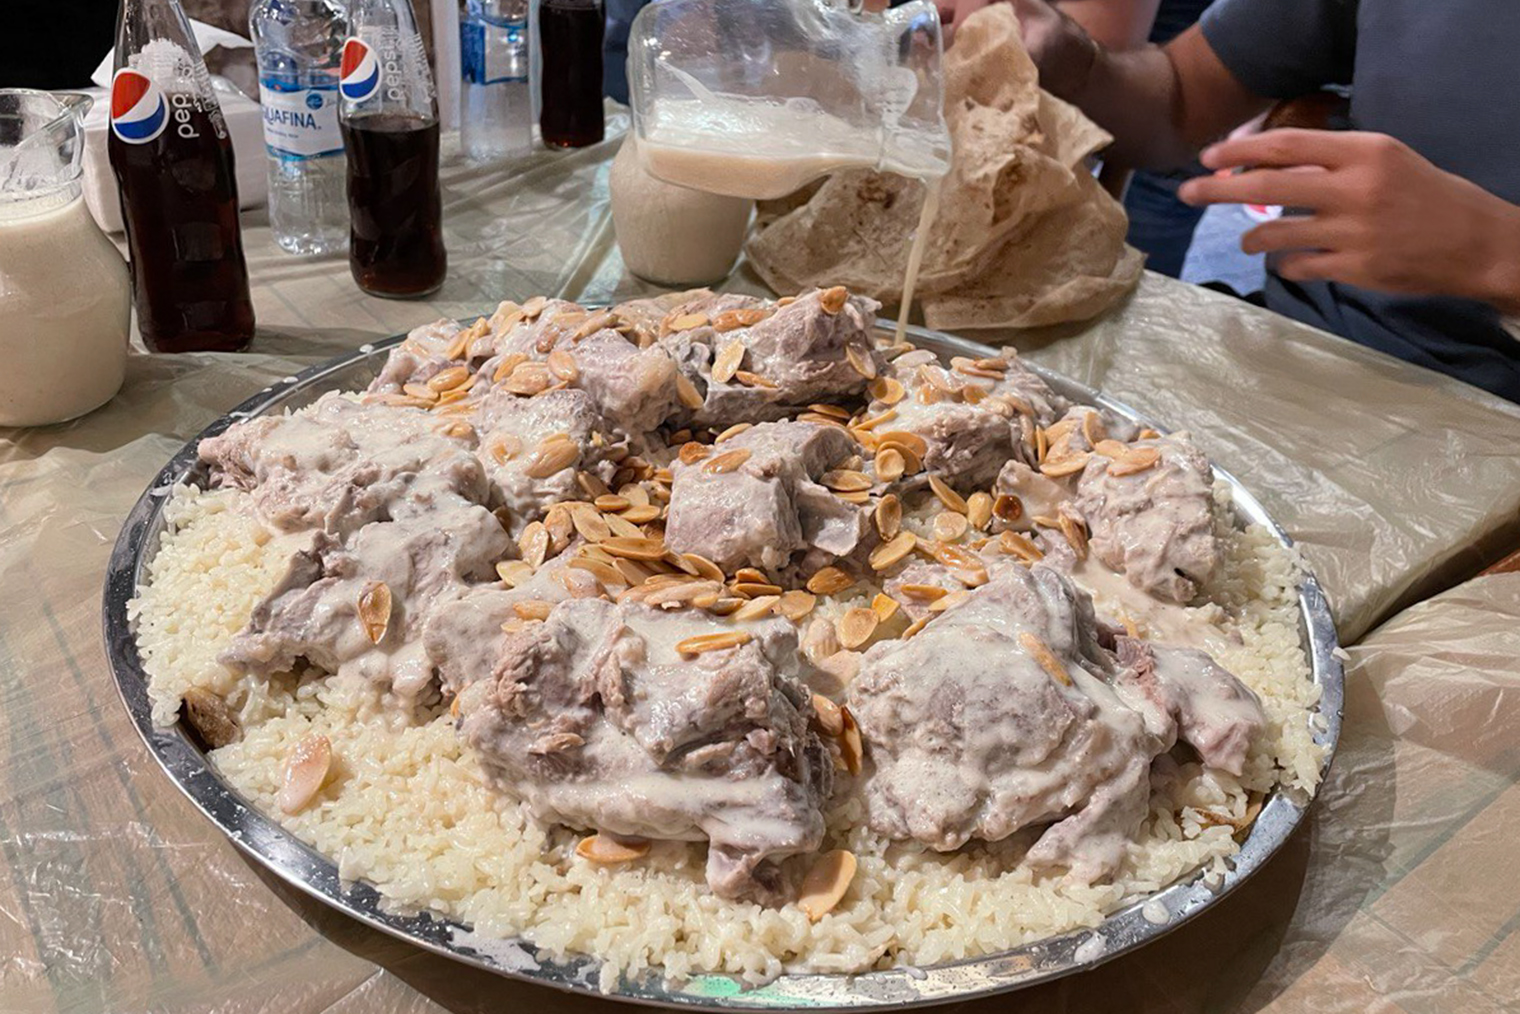 Традиционное иорданское блюдо мансаф — рис с бараниной, залитый густым молоком. Его брали нечасто, только когда выбирались с другими студентами, потому что мясо в Иордании значительно дороже еды из нута